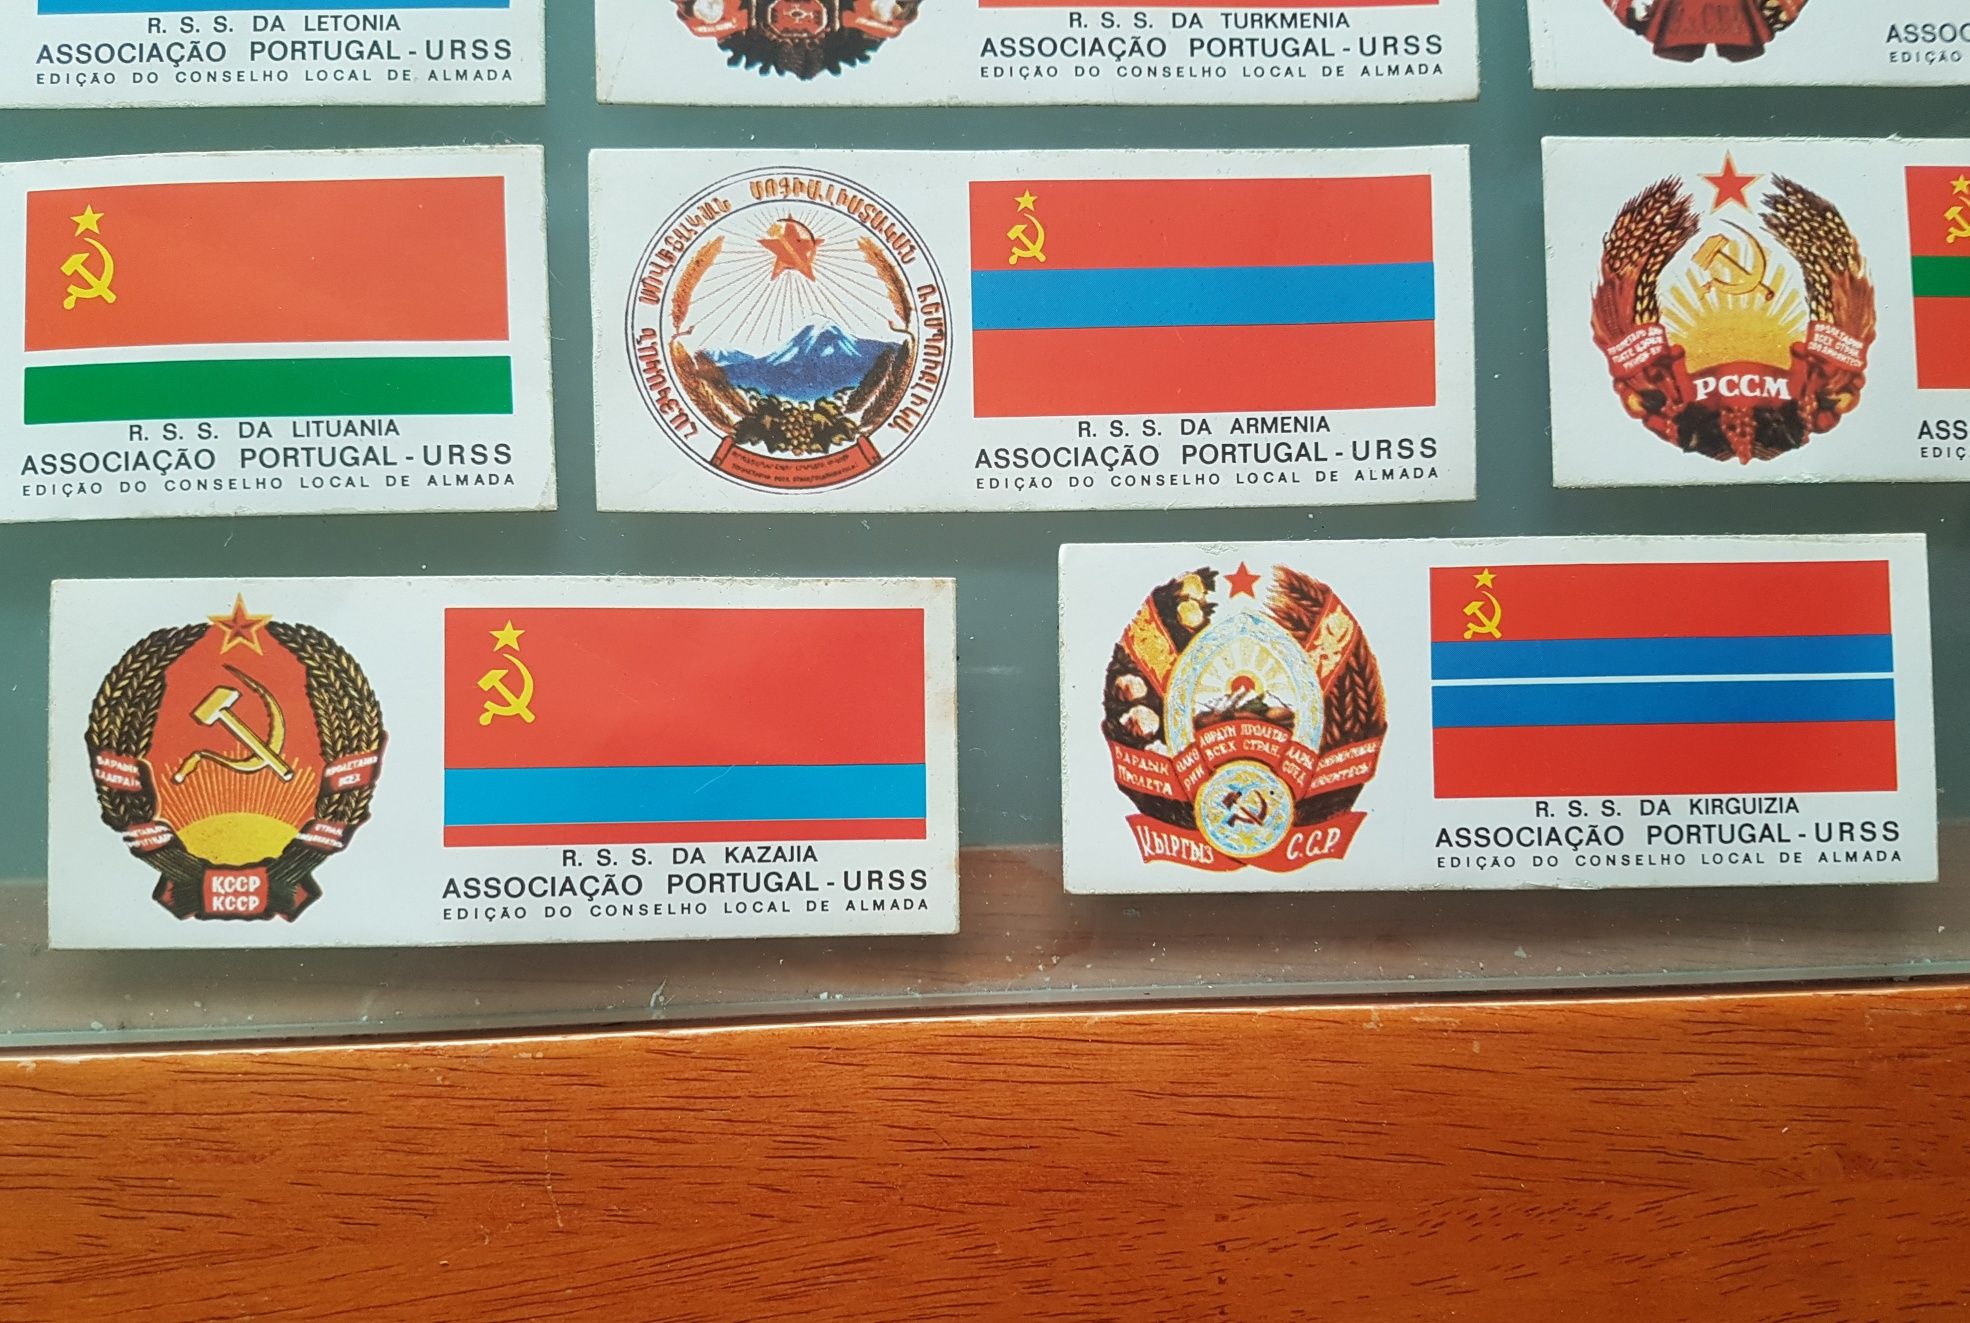 Autocolante da Associação Portugal - URSS